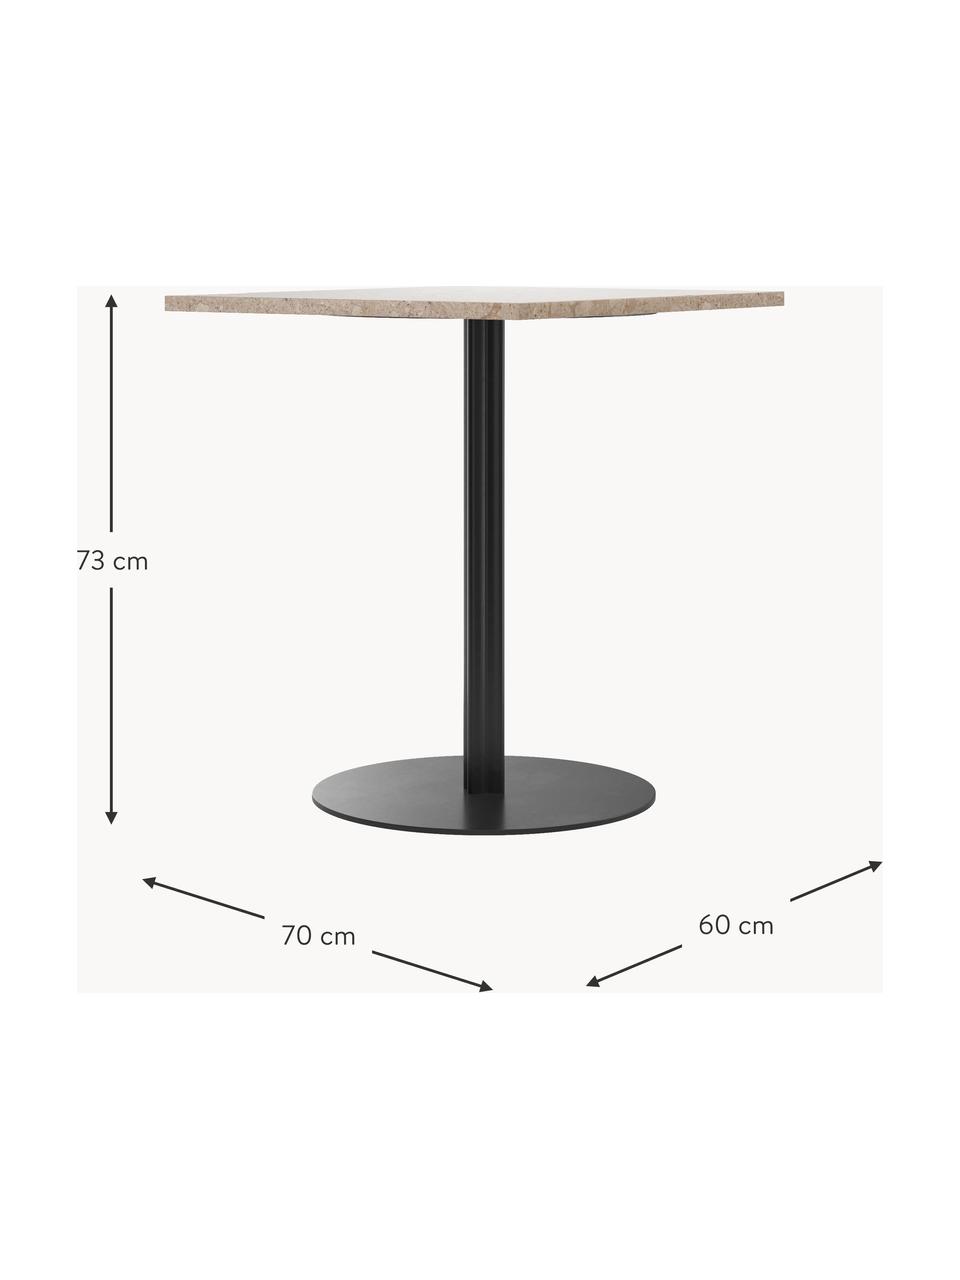 Jídelní stůl z pískovce Harbour, 70 x 60 cm, Pískovec. černá, Š 60 cm, H 70 cm